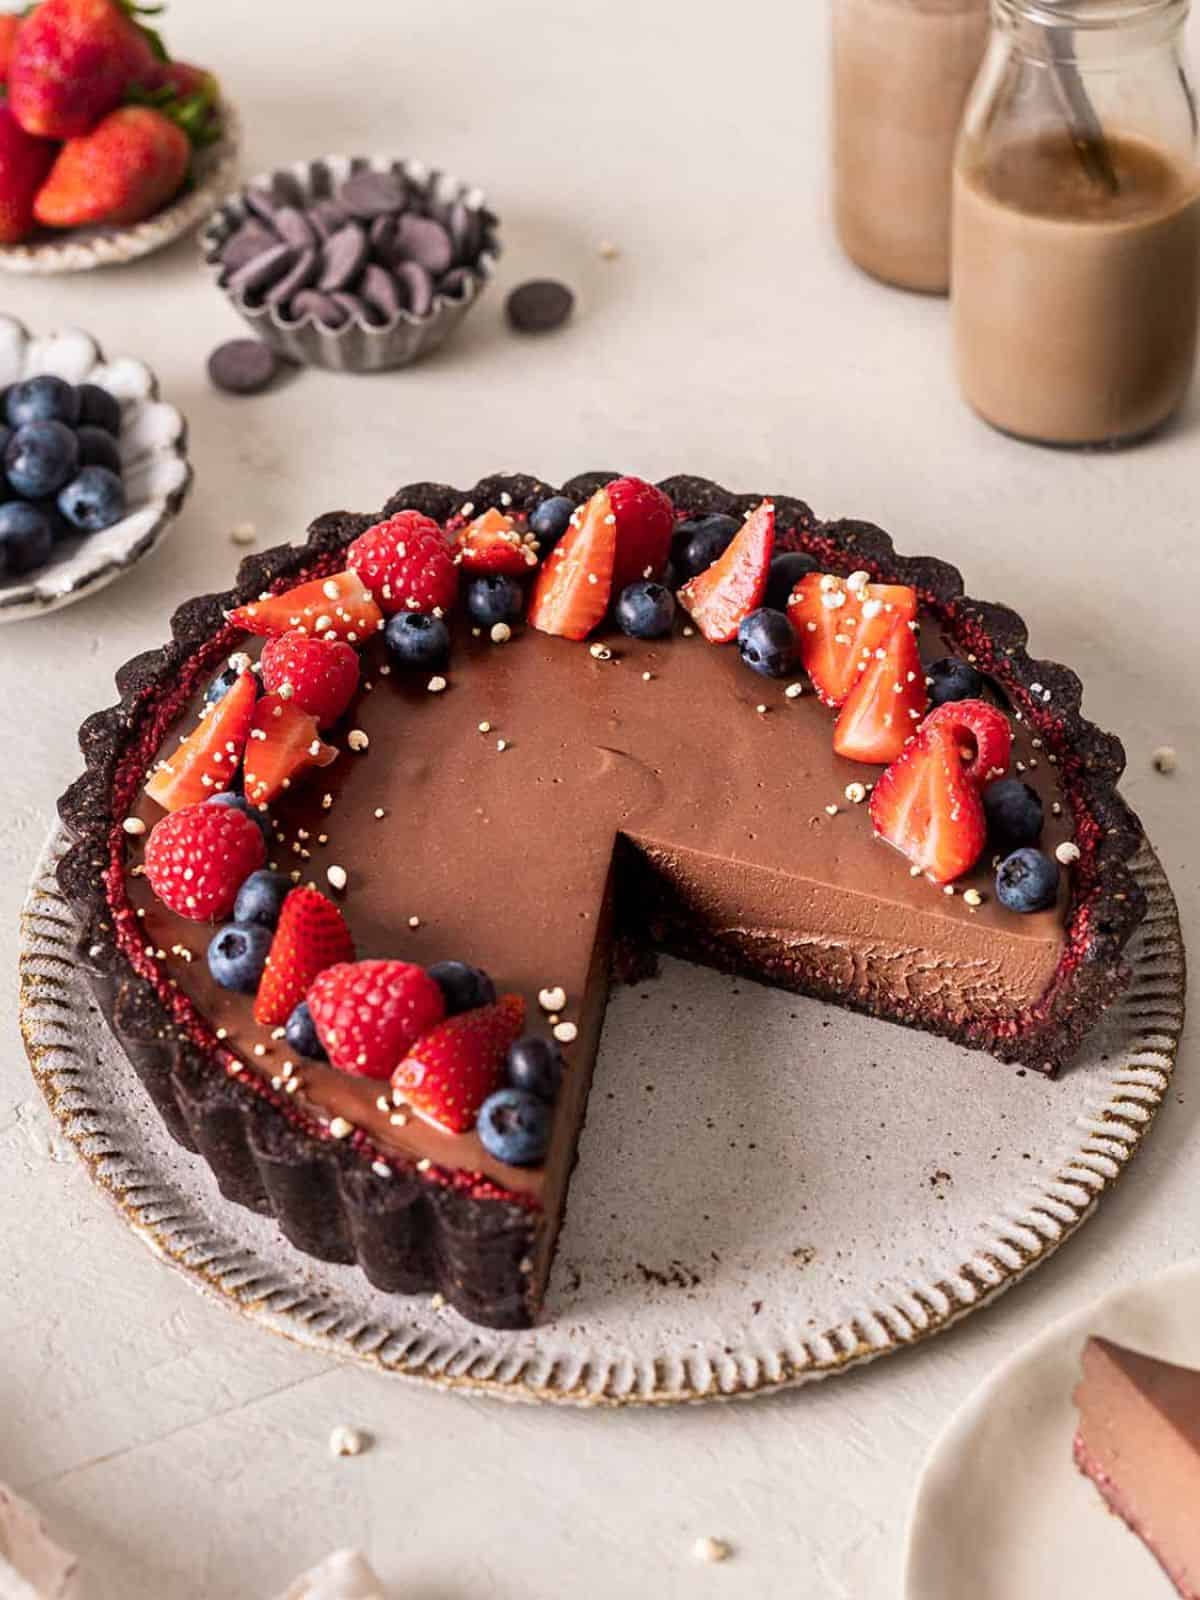 Vegan chocolate tart topped with fresh berries.